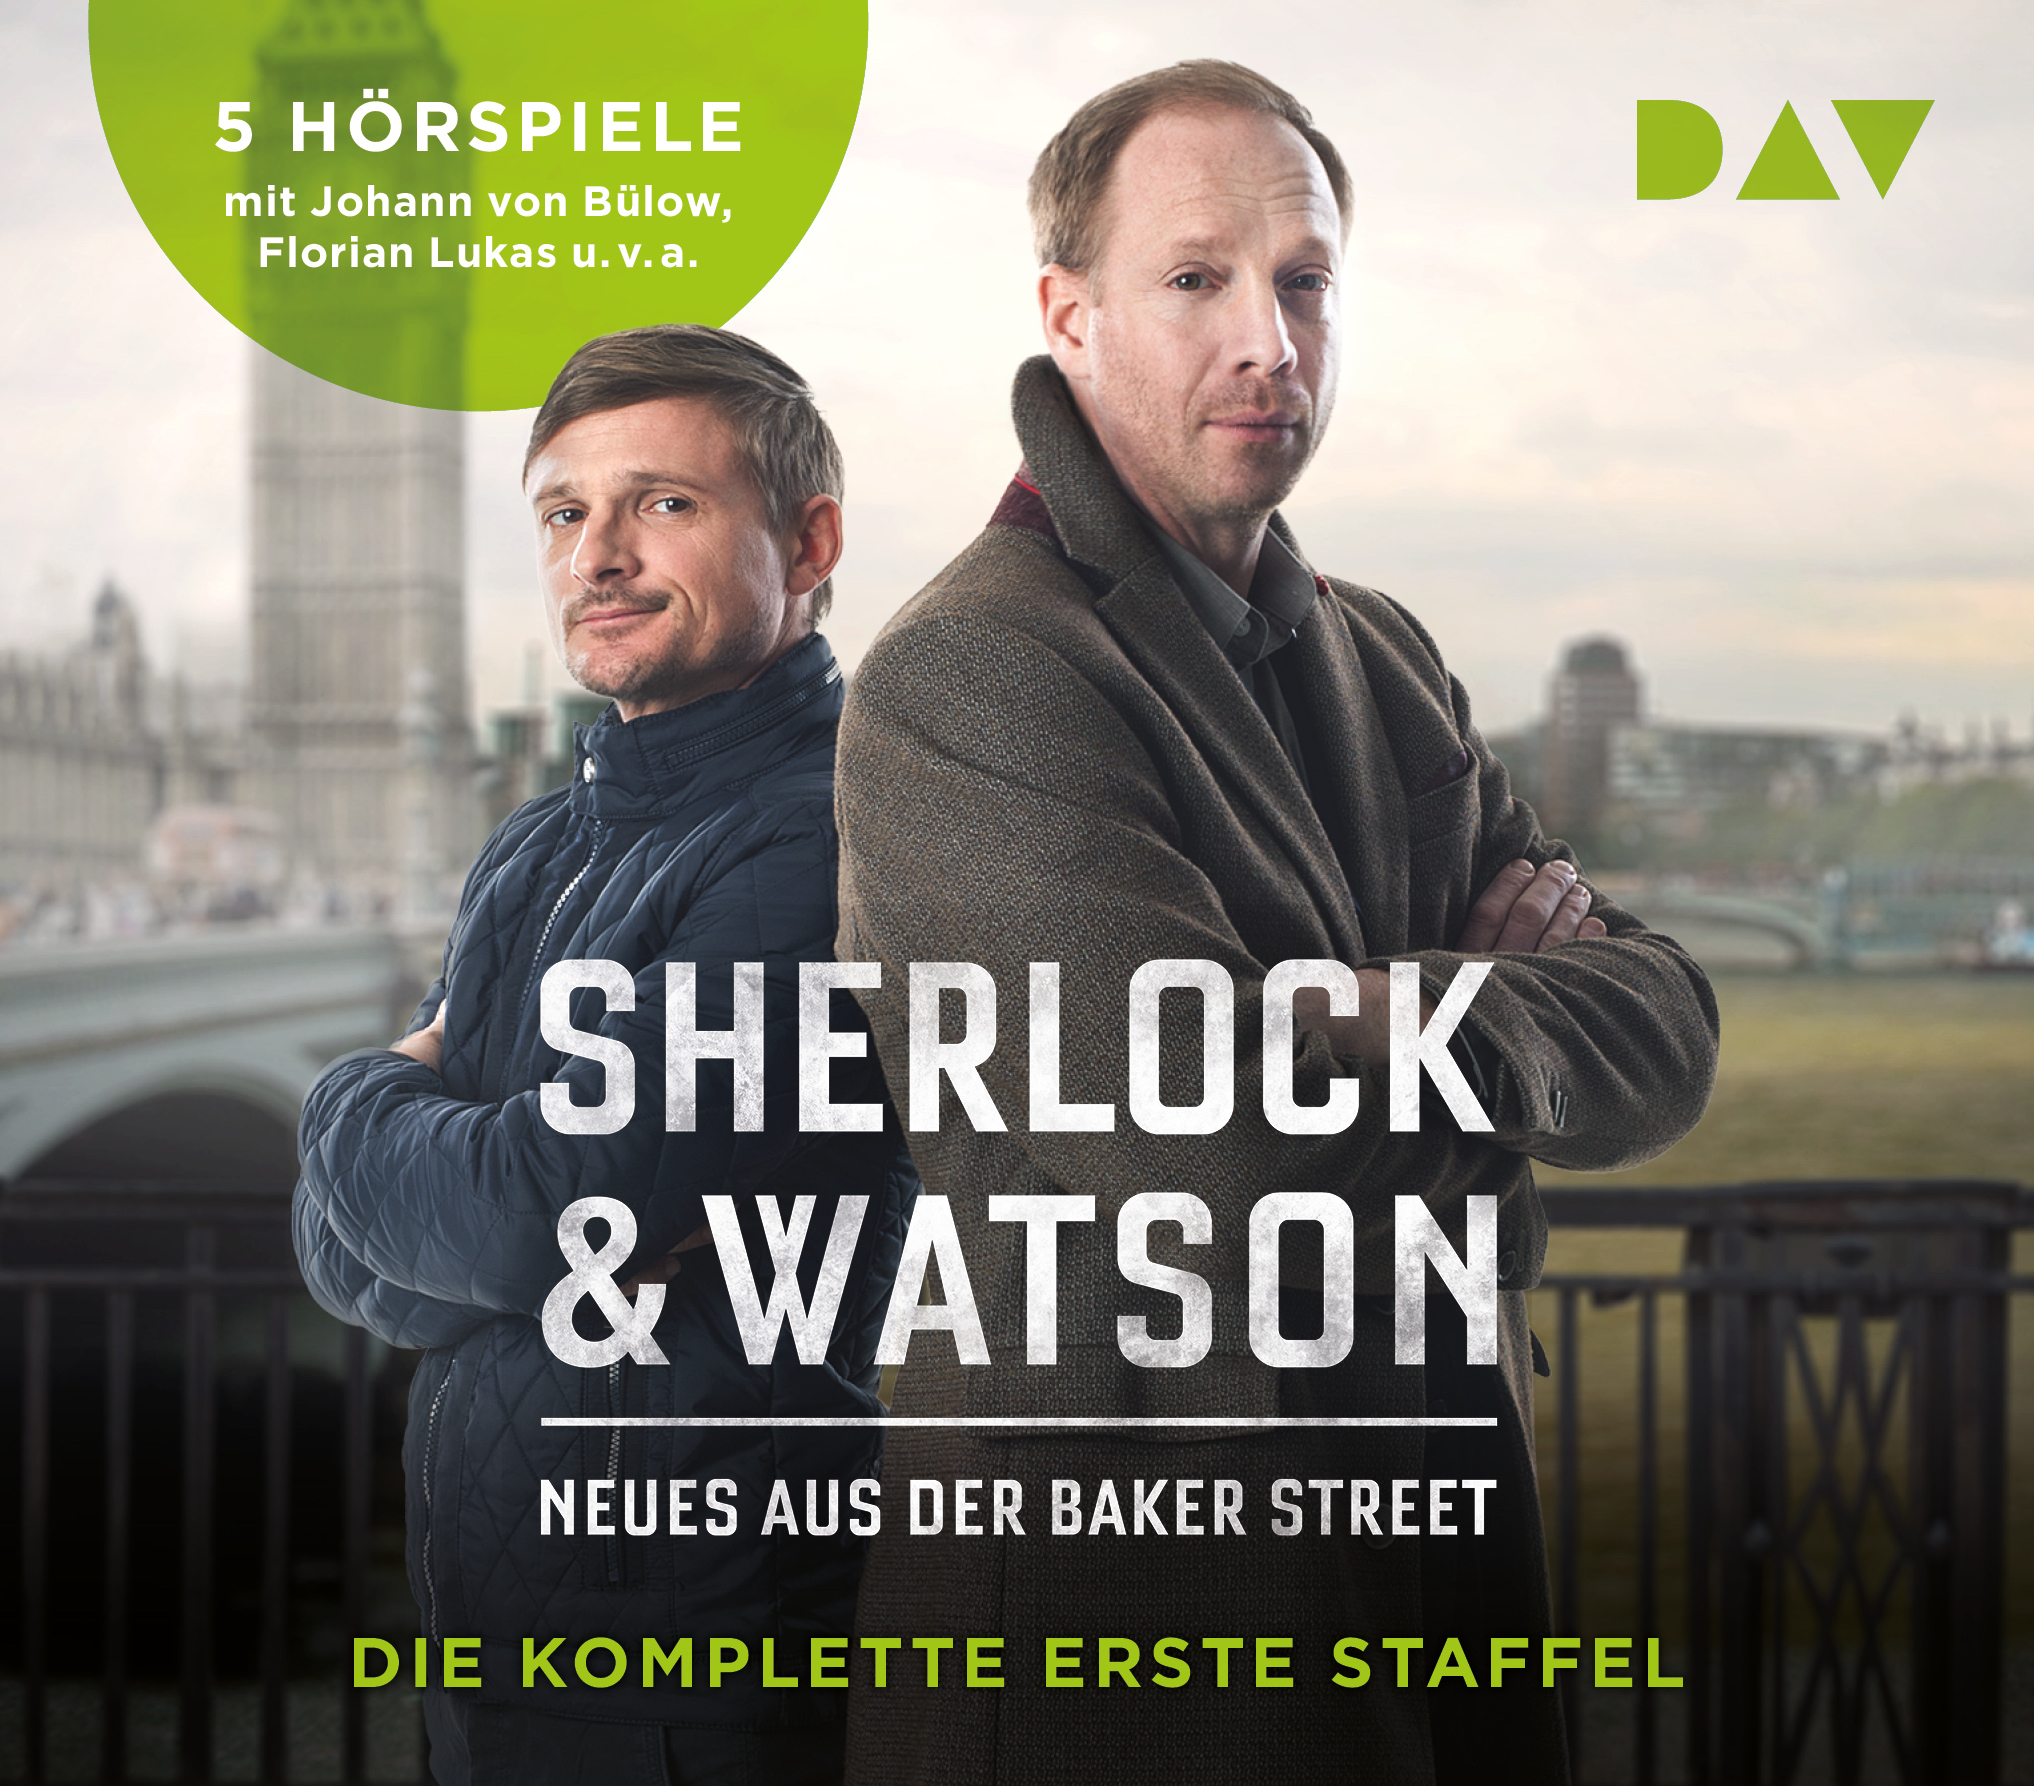 „Sherlock & Watson“ ermitteln in einer spektakulären Hörspielreihe